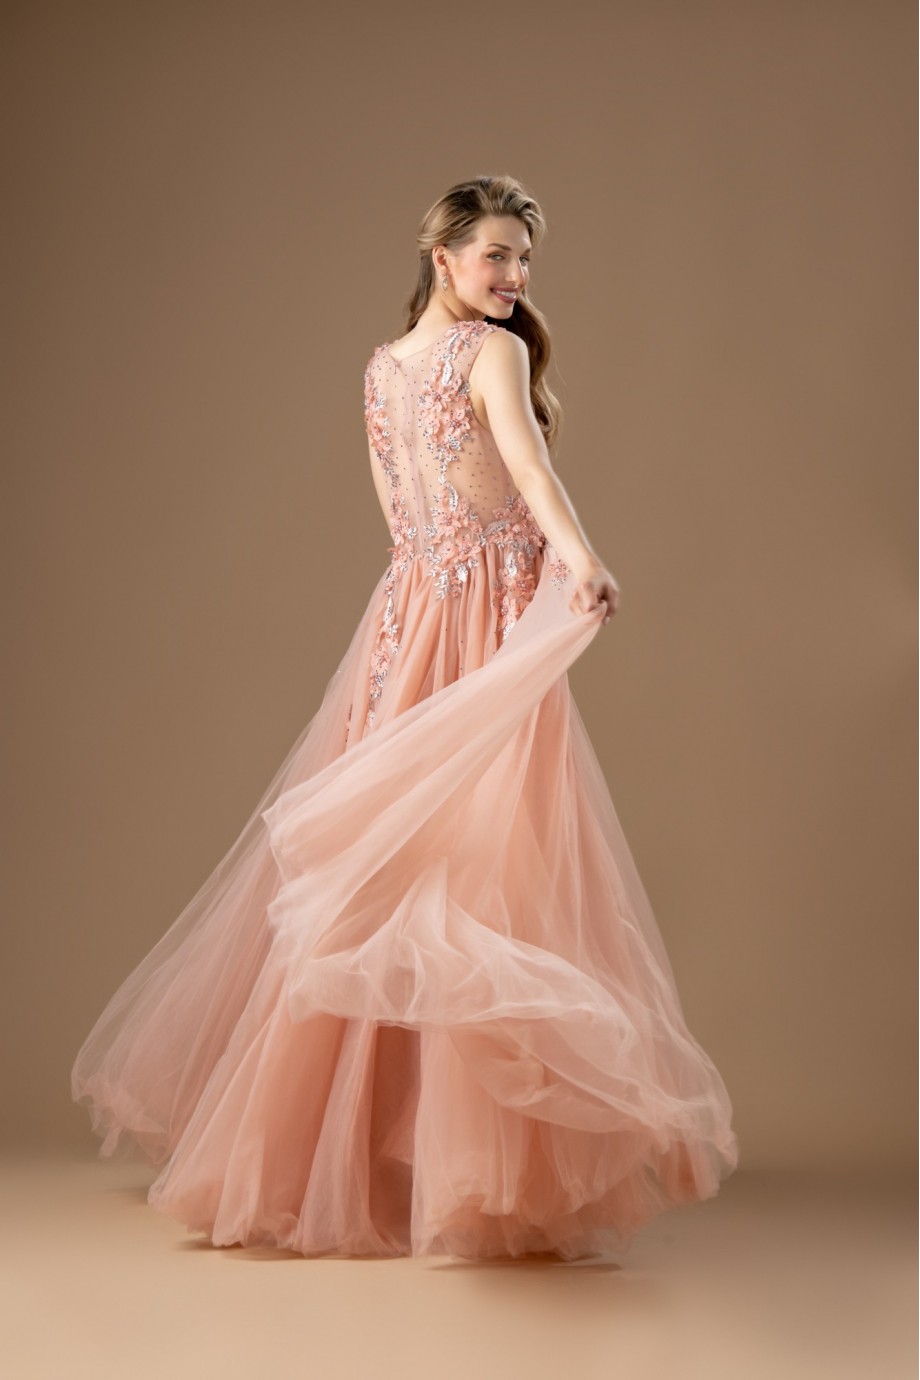 Μακρύ ροζ τούλινο φόρεμα